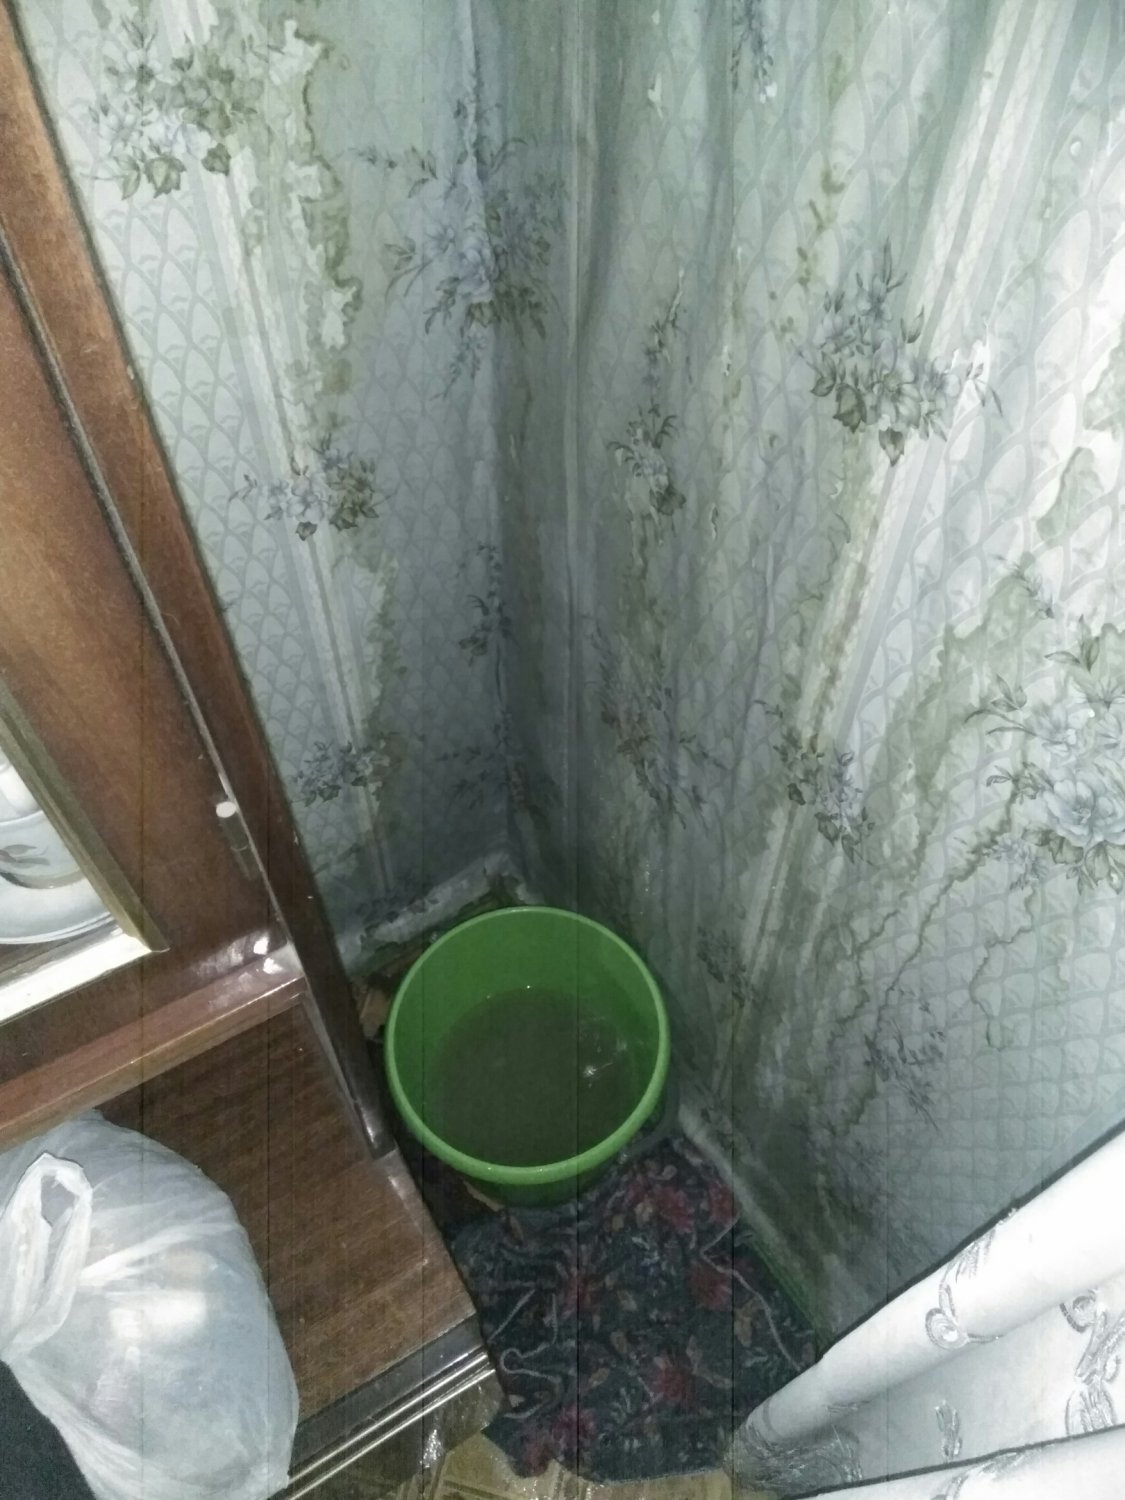 Откуда в квартире вода. В квартире льется вода с потолка. Вода в коридоре протекает с потолка ведра. Гостинка в Красноярске с потолка вода напол льеиься подон.